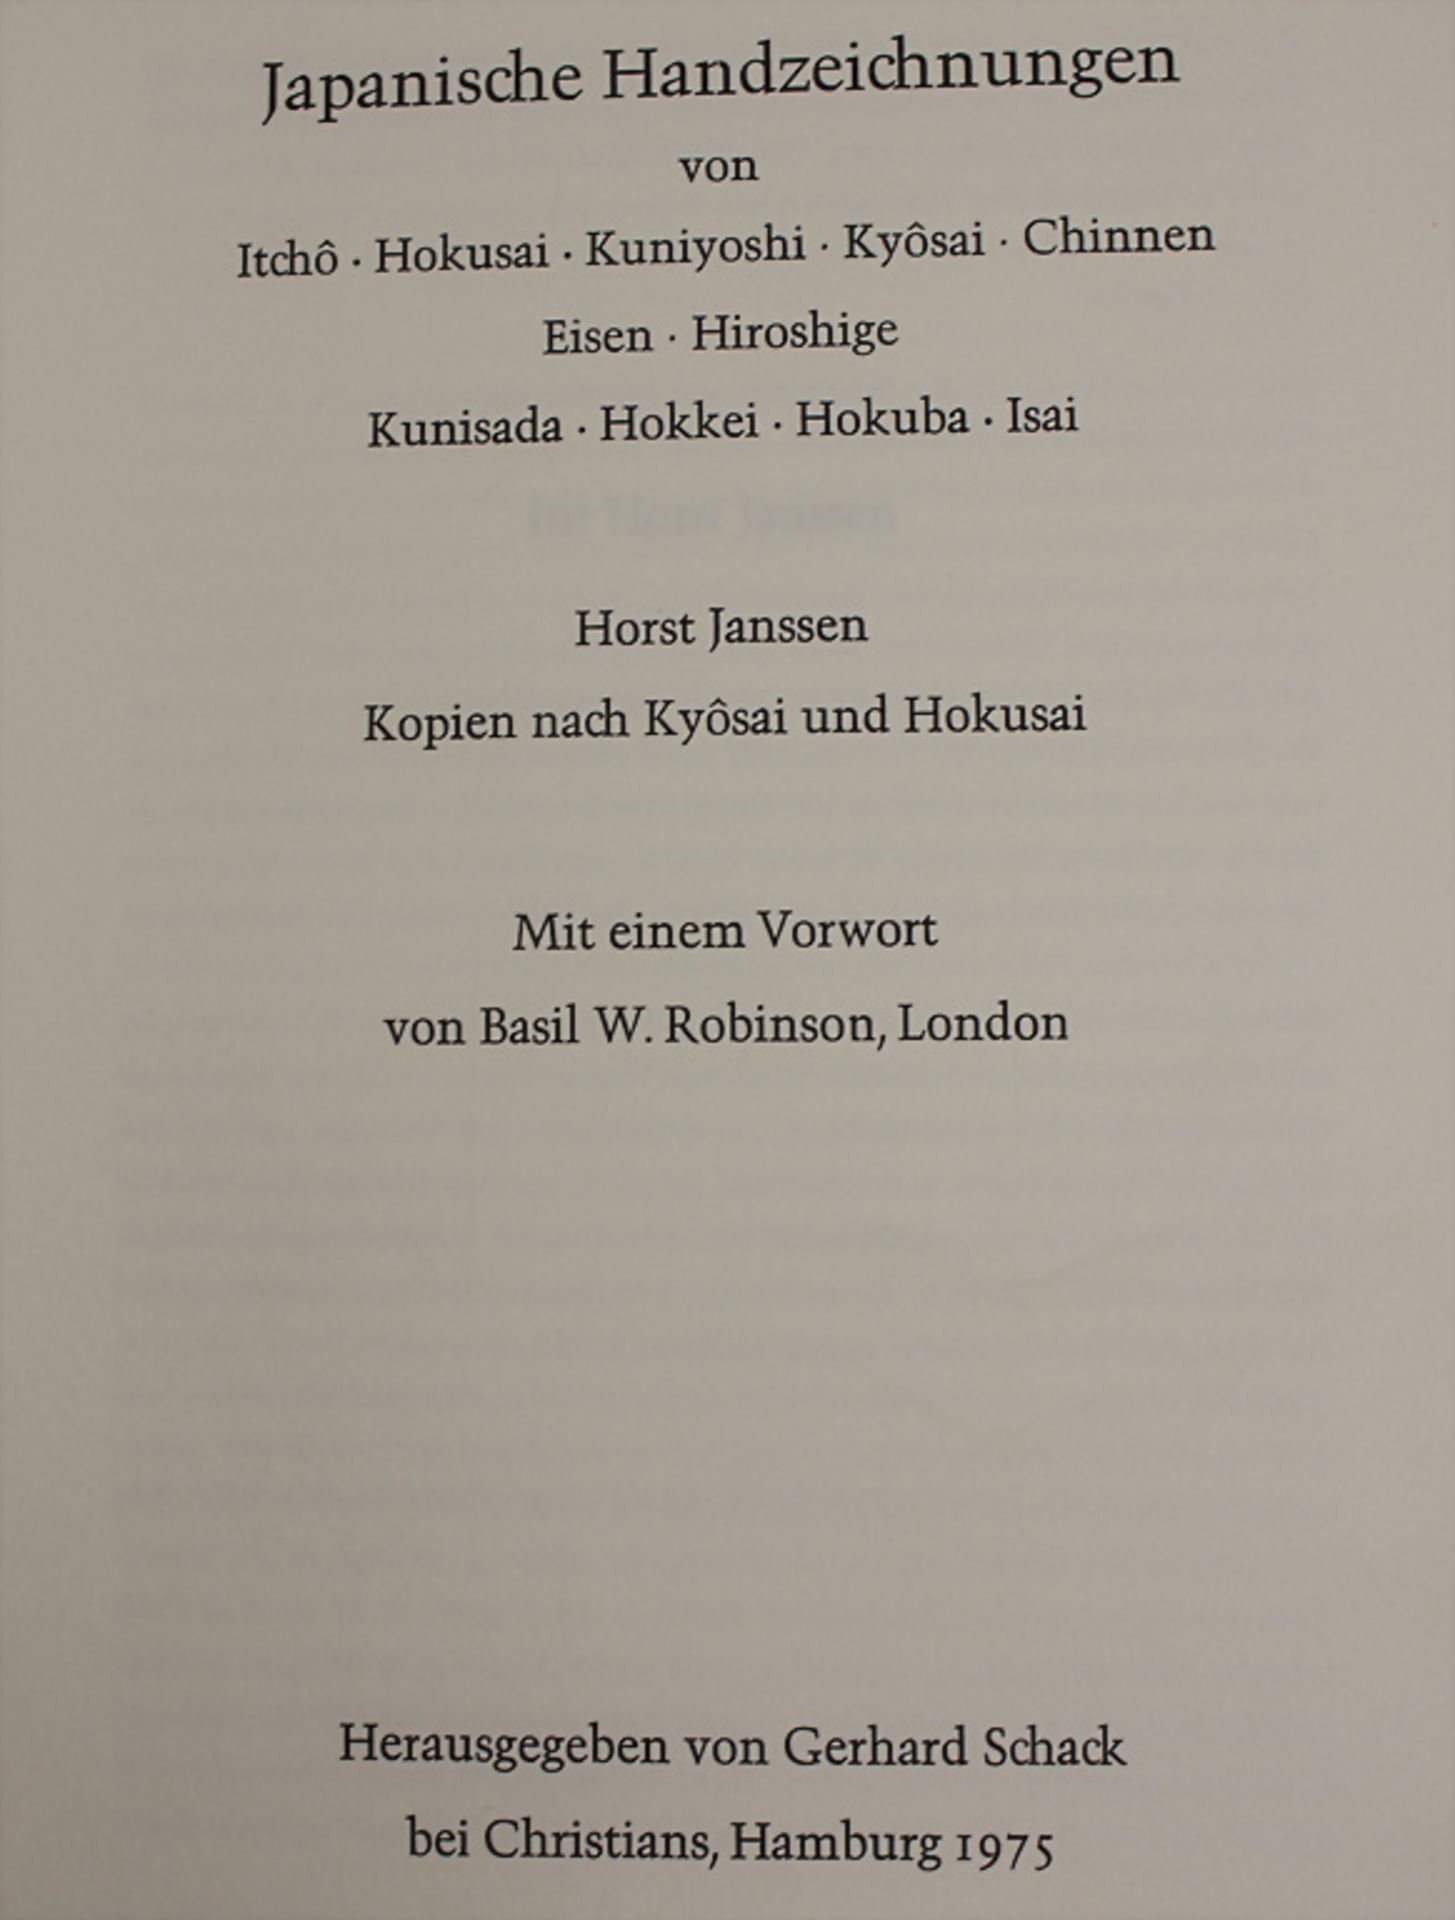 Gerhard Schack: 'Japanische Handzeichnungen', Hamburg, 1975